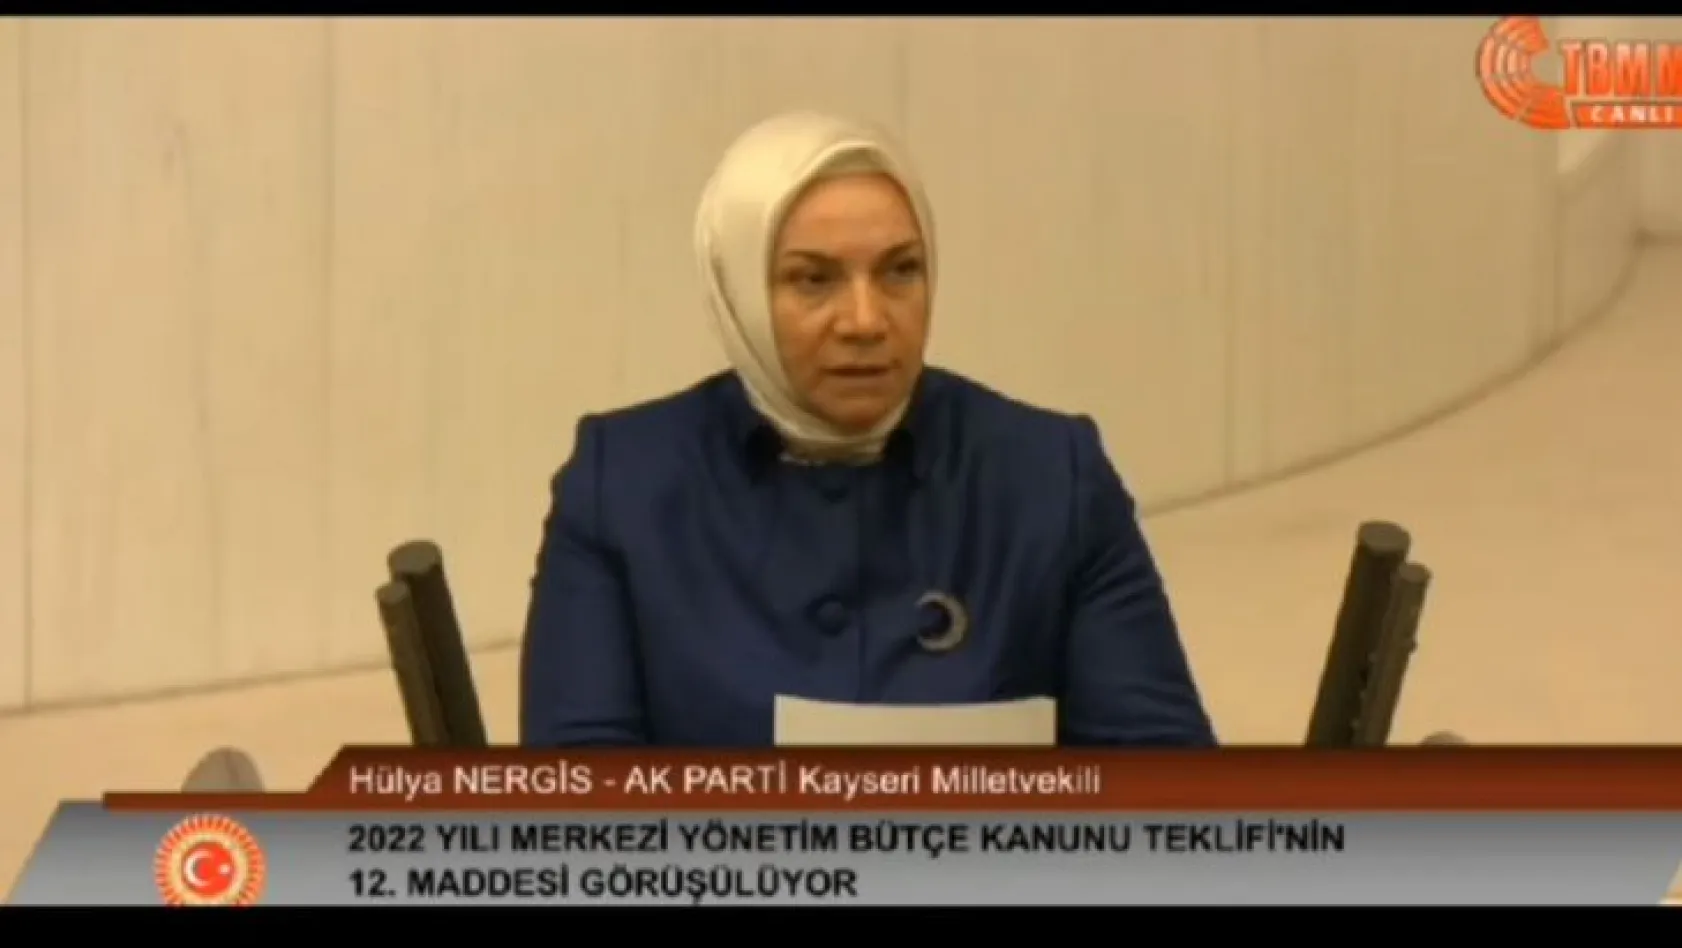 AK Parti Milletvekili Nergis: Halkımız bize güvendi, destekledi, bu güvene layık olmaya çalıştık!